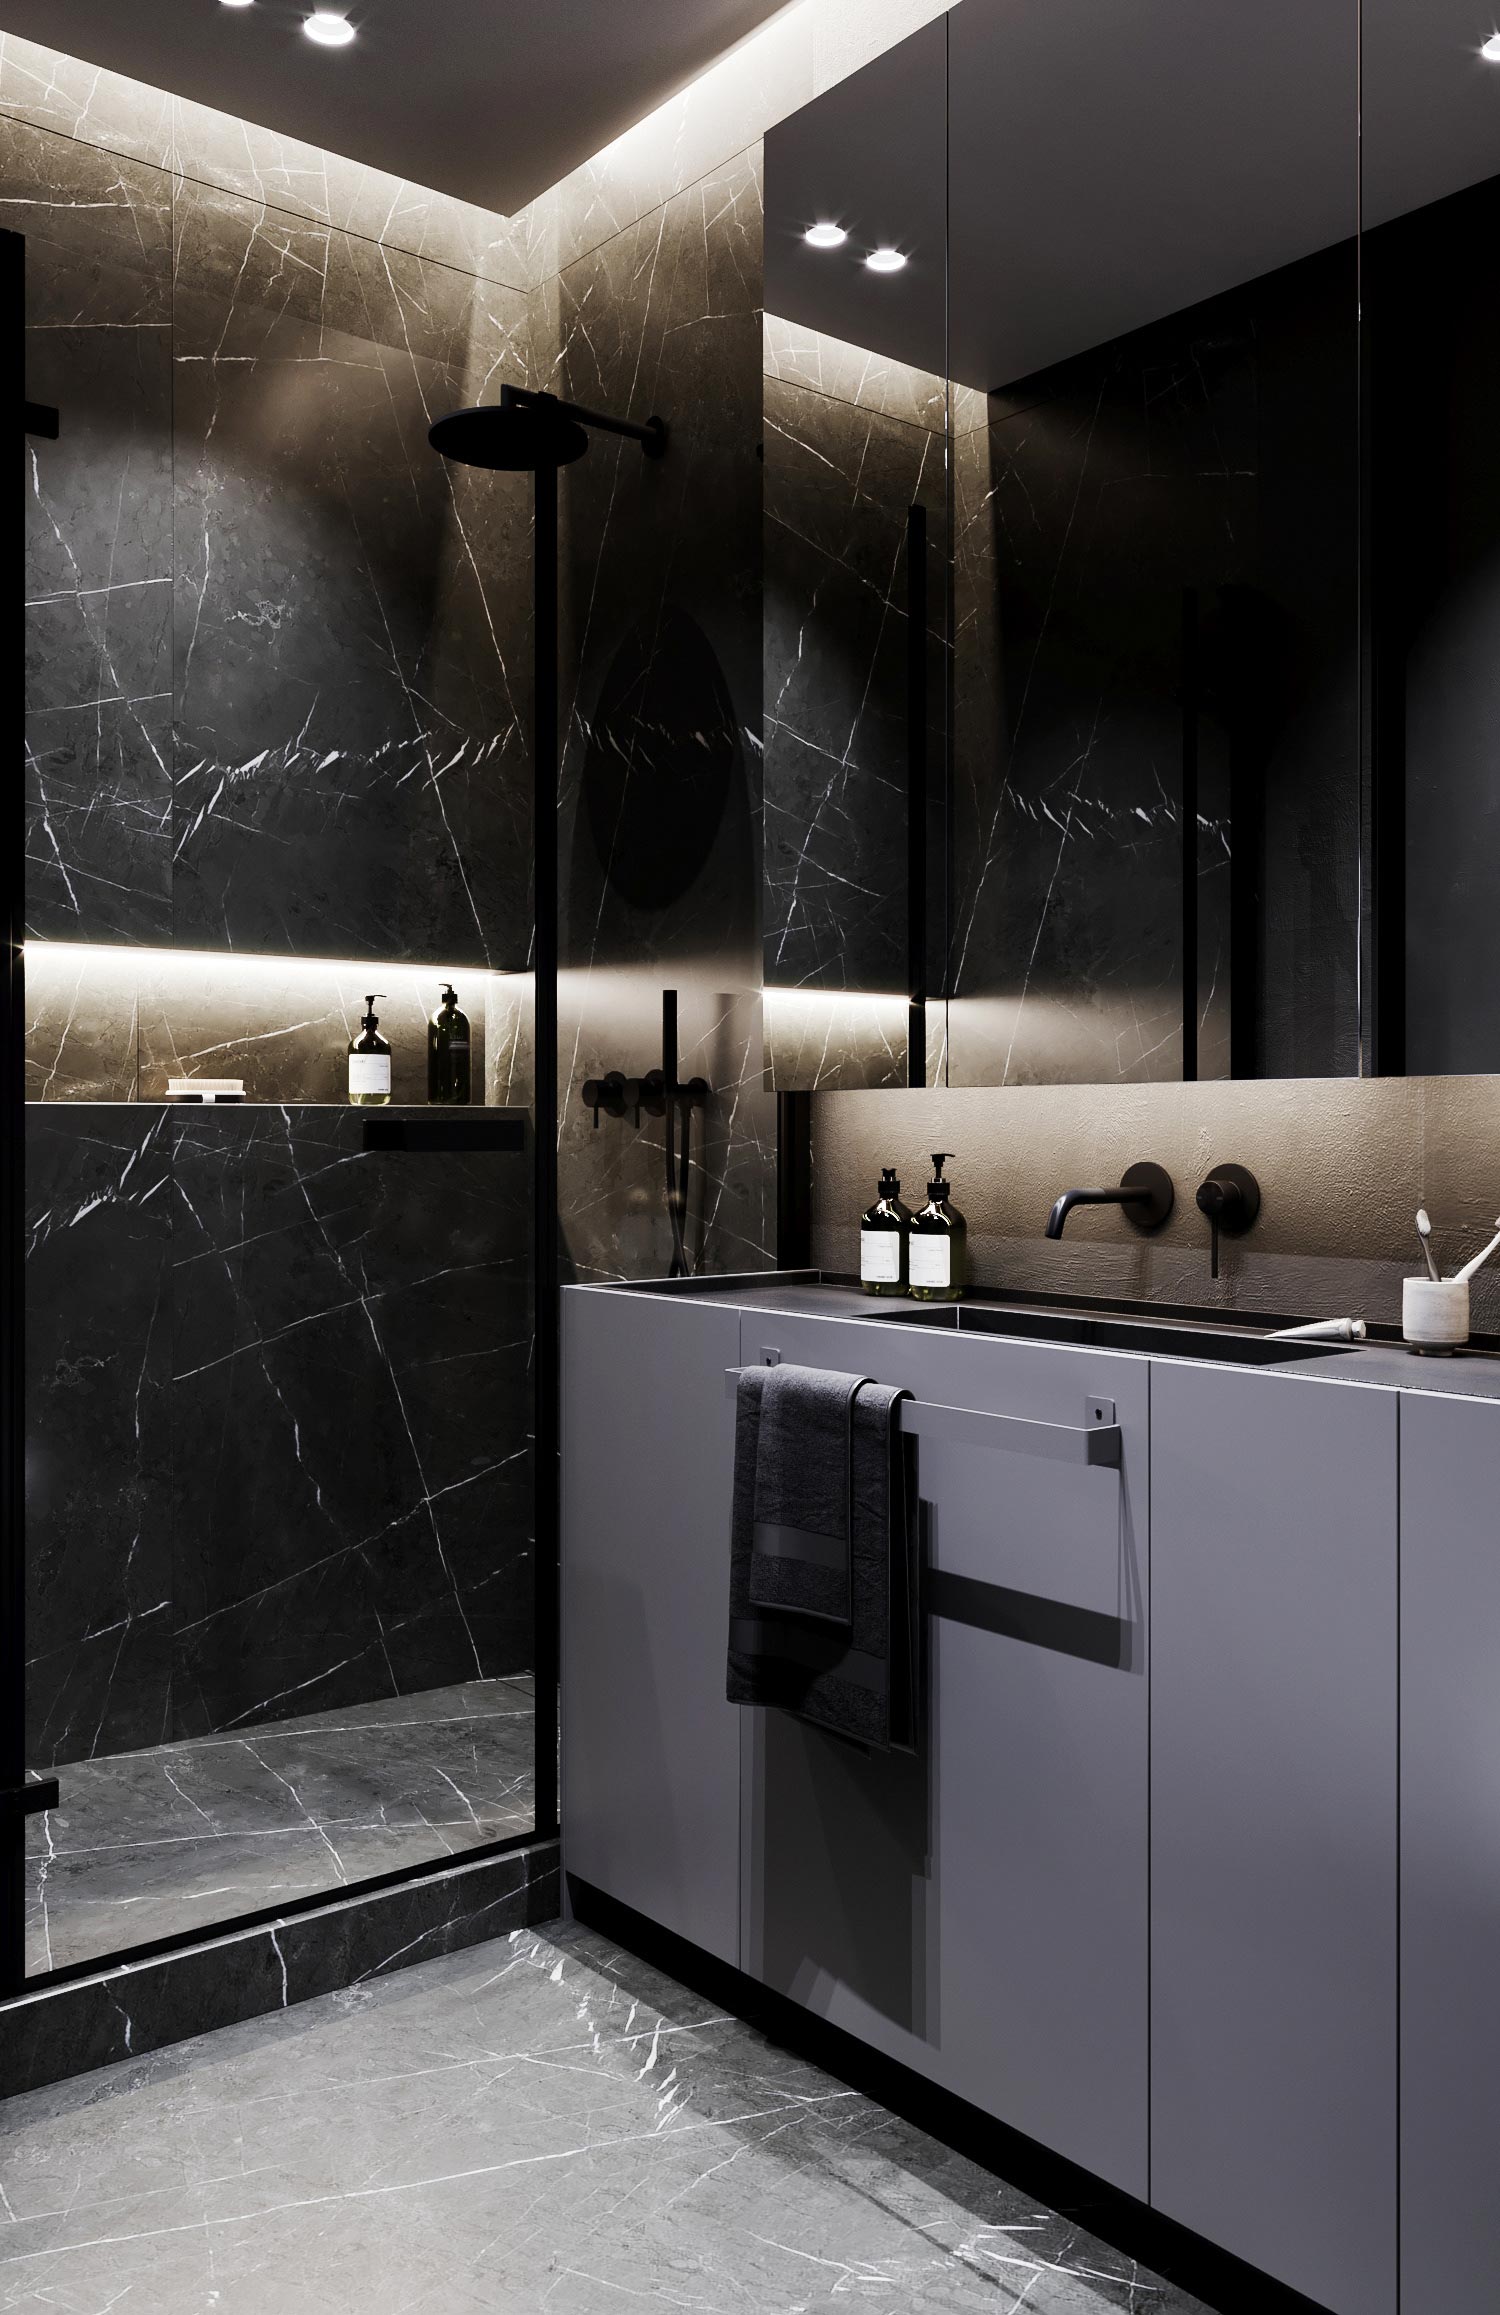 Dit ontwerp laat zien dat een zwarte vloer ook heel mooi kan uitpakken in een kleine badkamer. De zwarte marmeren tegels geven de badkaemr een hele chique look, vooral in combinatie met de verlichting.